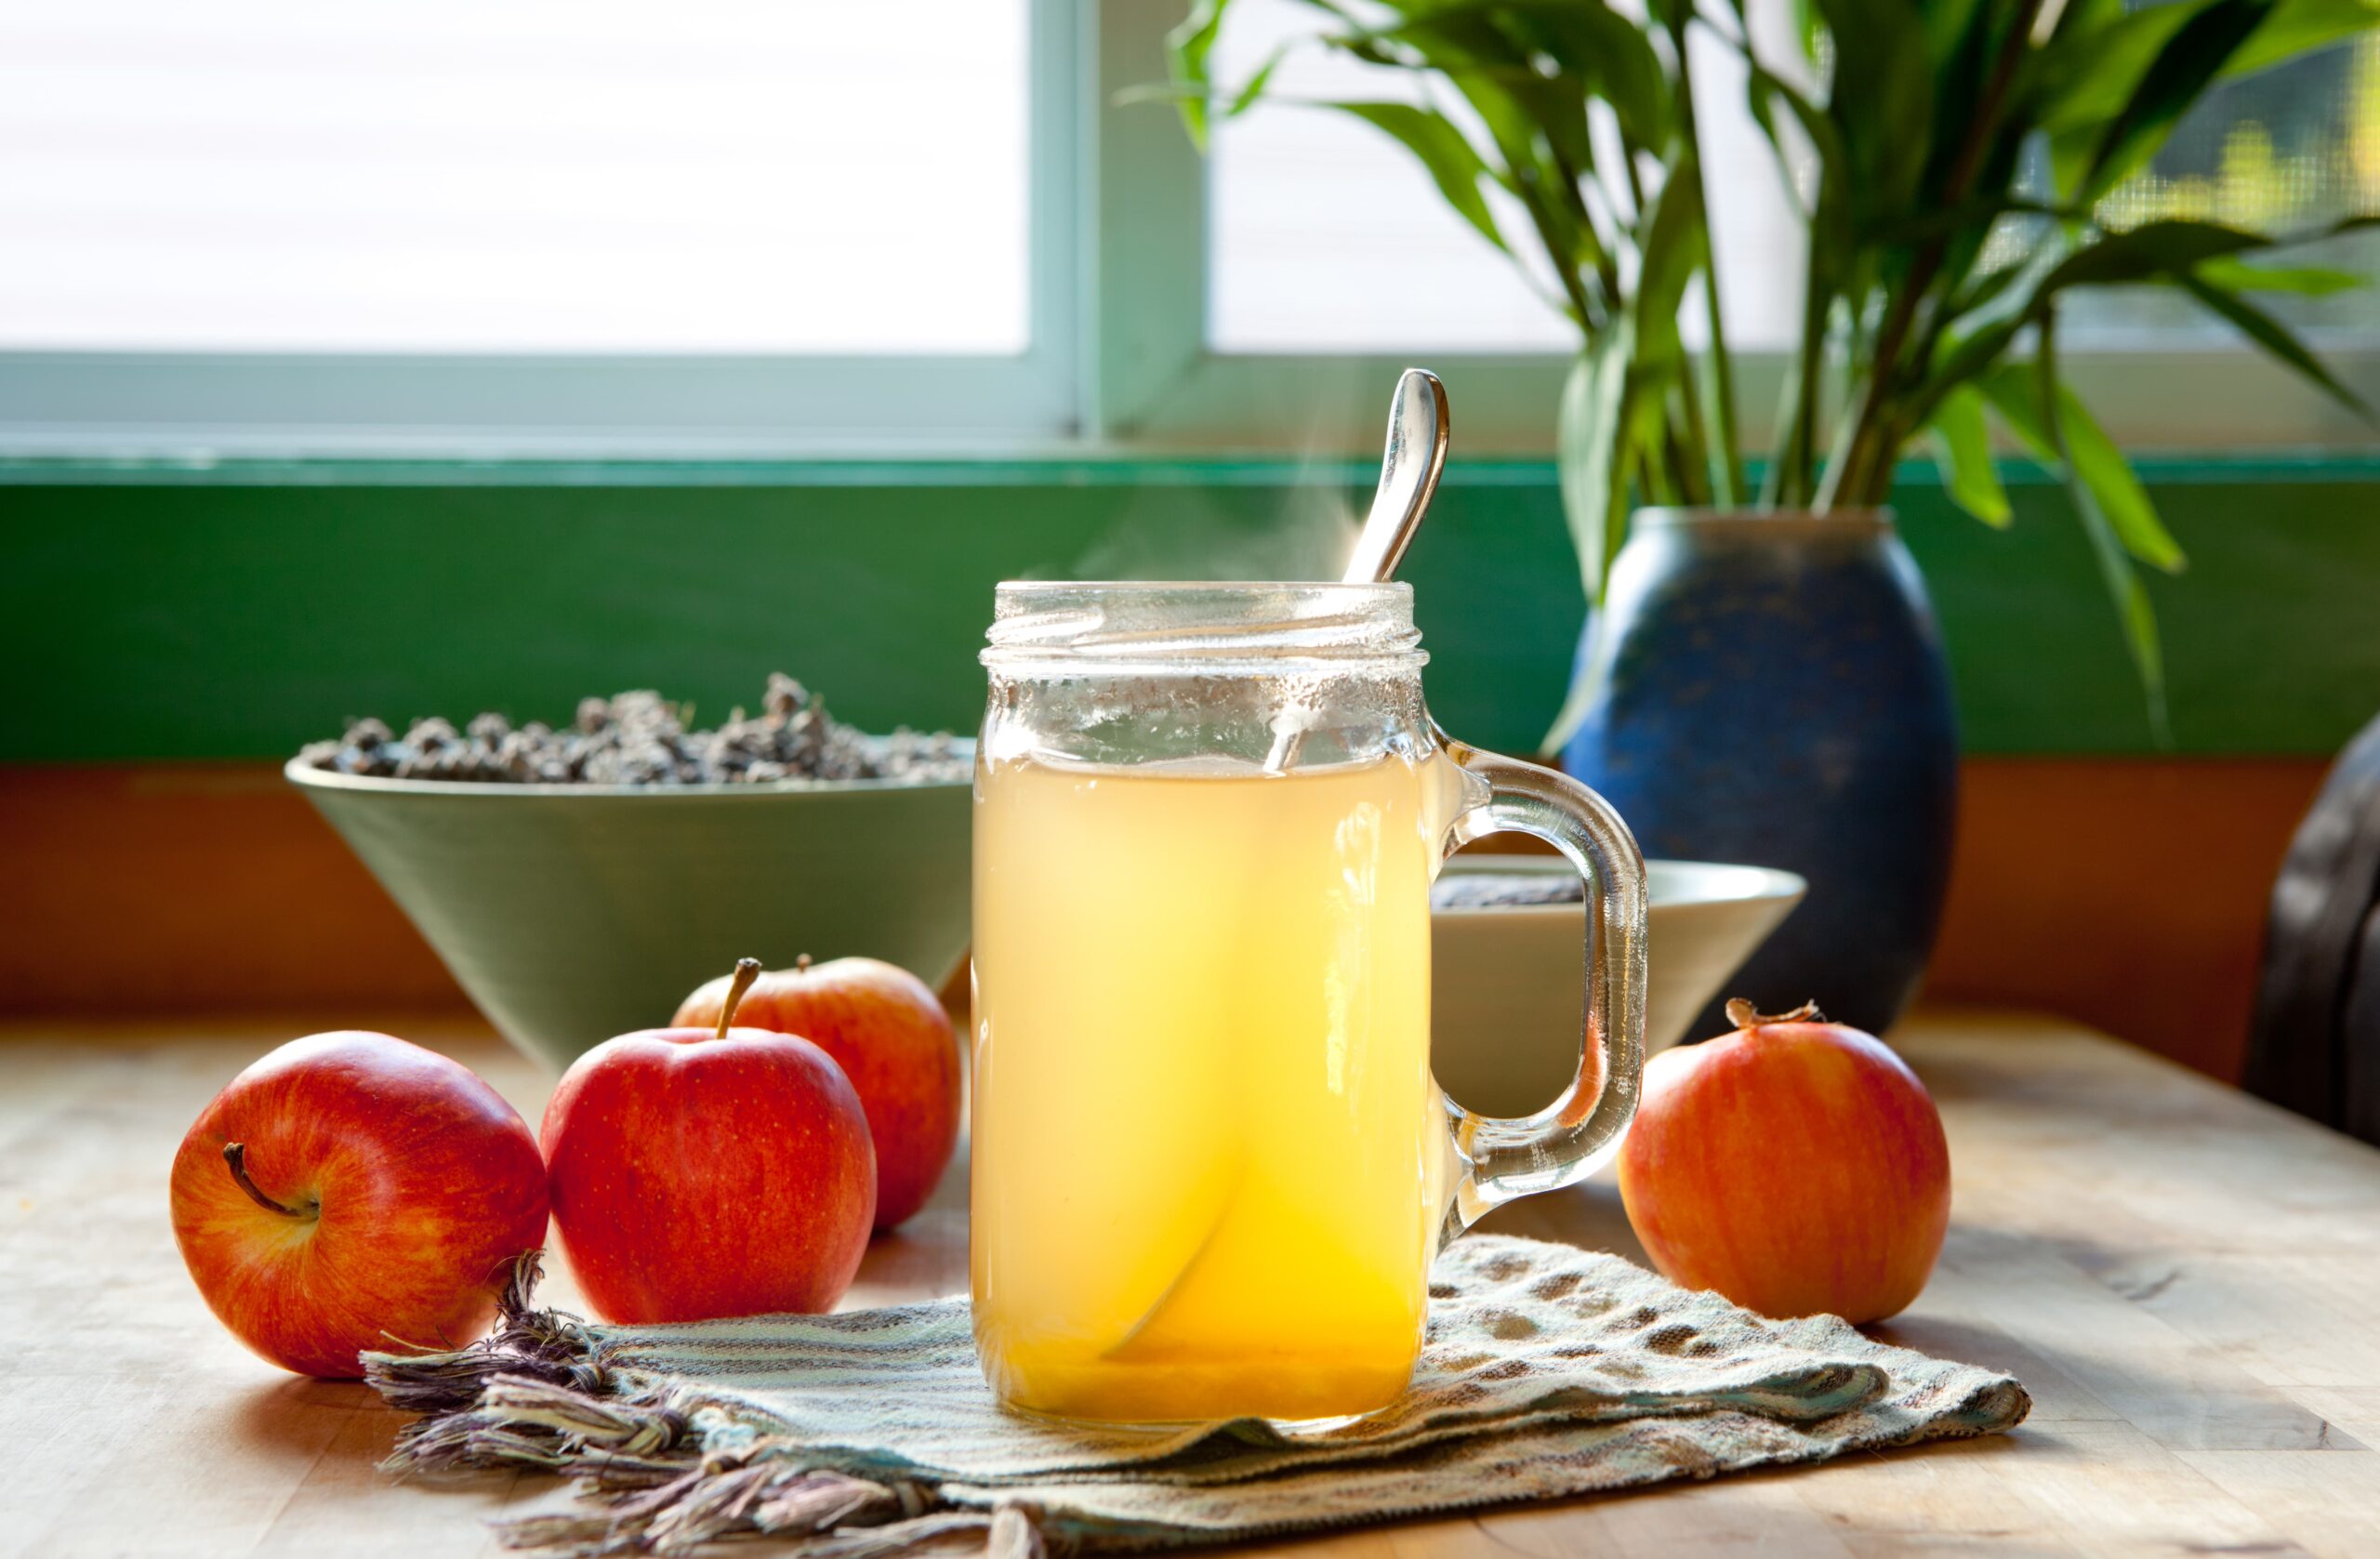 Why Apple Cider Vinegar for Heartburn?